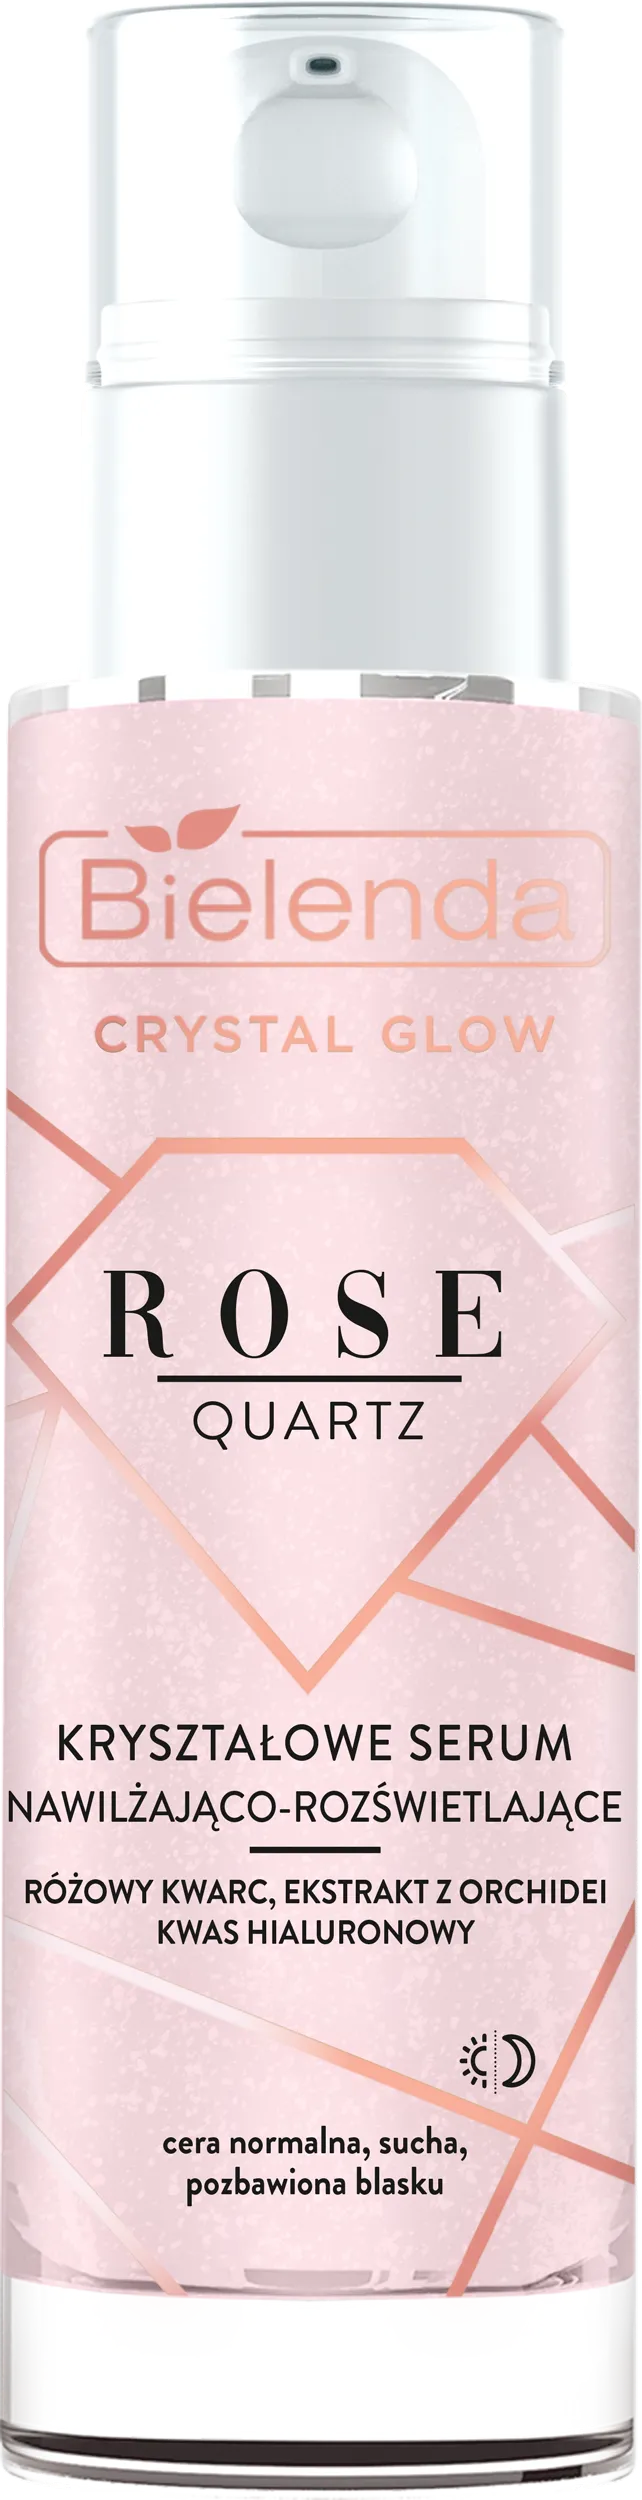 Bielenda Crystal Glow Rose Quartz kryształowe serum nawilżająco-rozświetlające, 30 ml